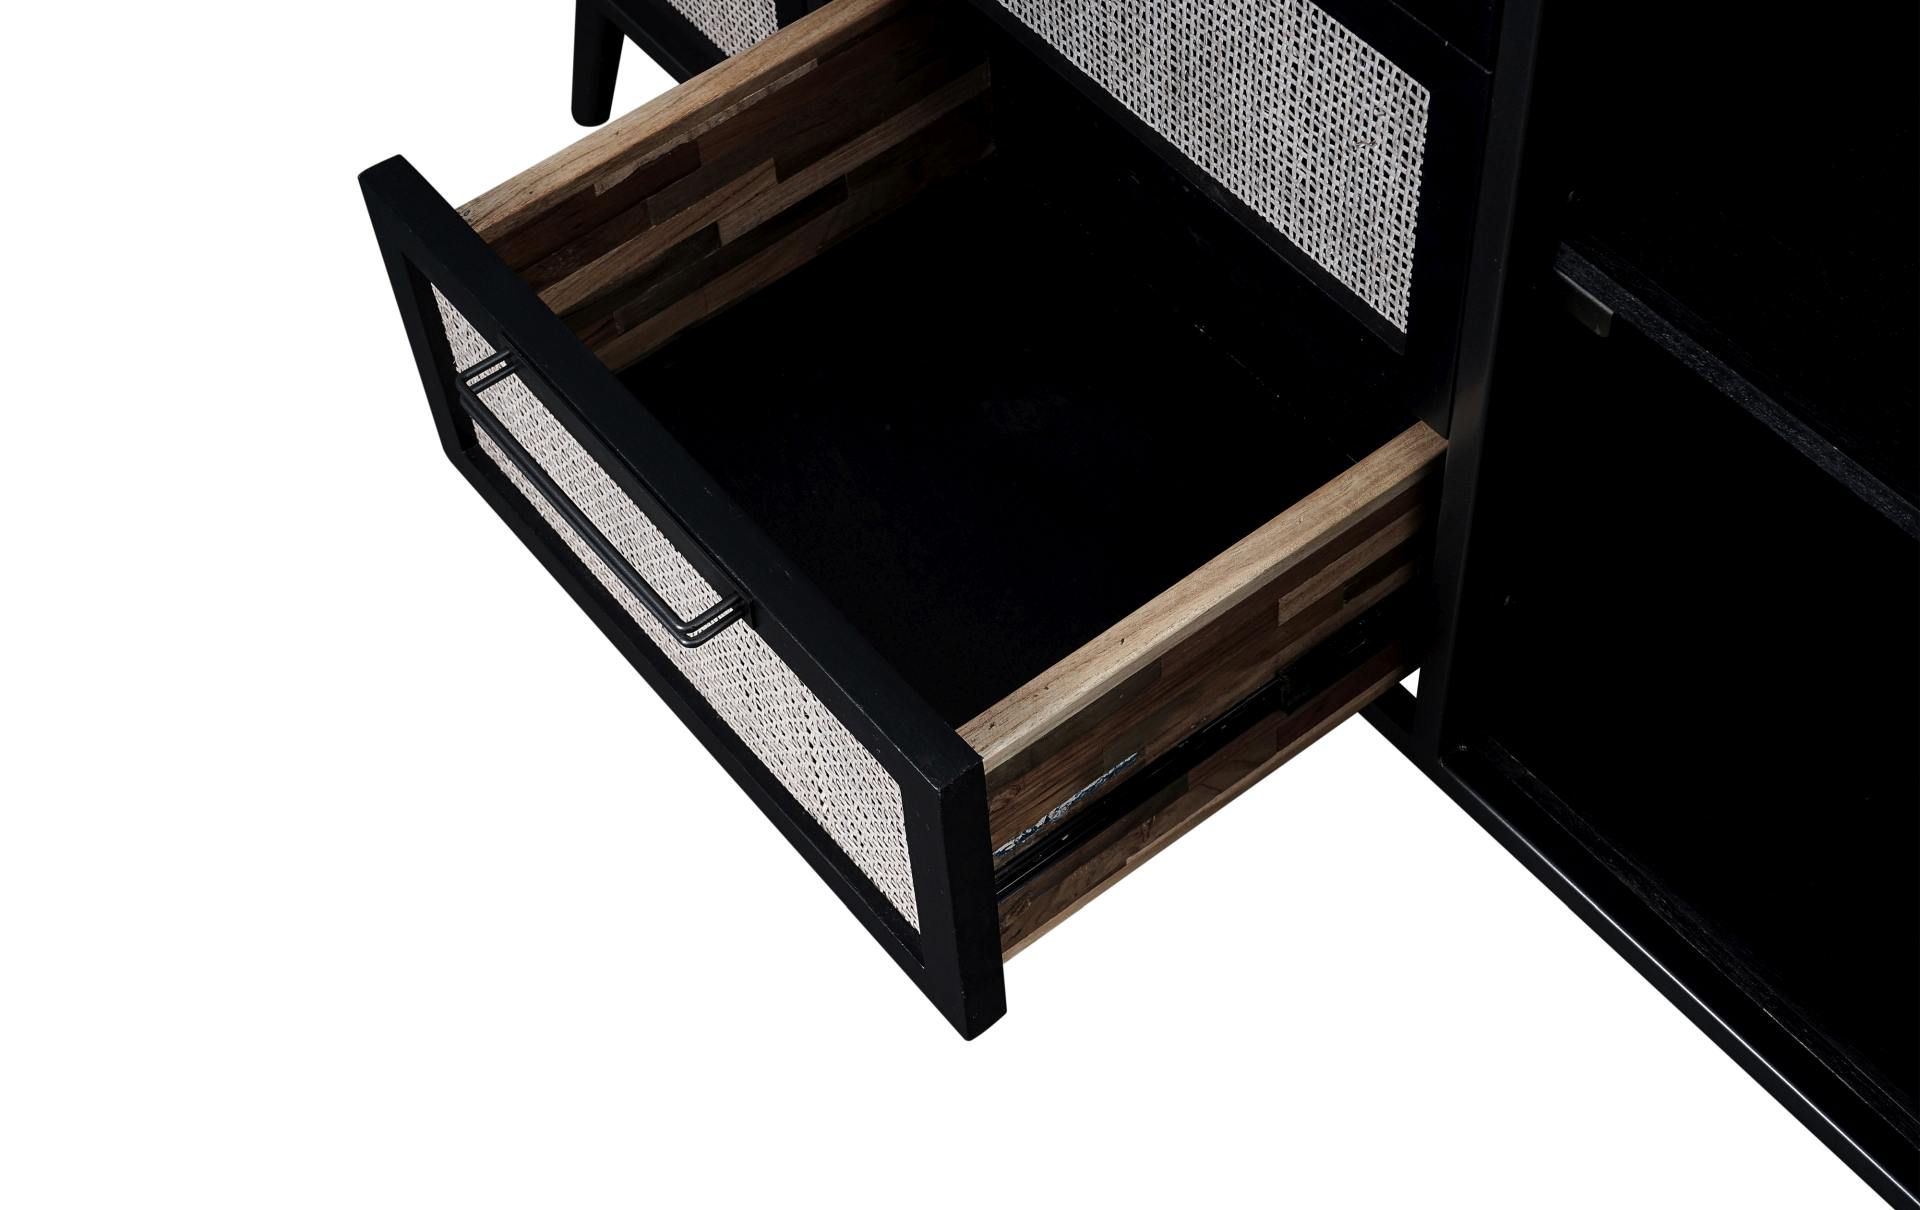 Das Sideboard Nordic Mindi Rattan überzeugt mit seinem Industriellen Design. Gefertigt wurde es aus Rattan und Mindi Holz, welches einen schwarzen Farbton besitzt. Das Gestell ist aus Metall und hat eine schwarze Farbe. Das Sideboard verfügt über zwei Tür